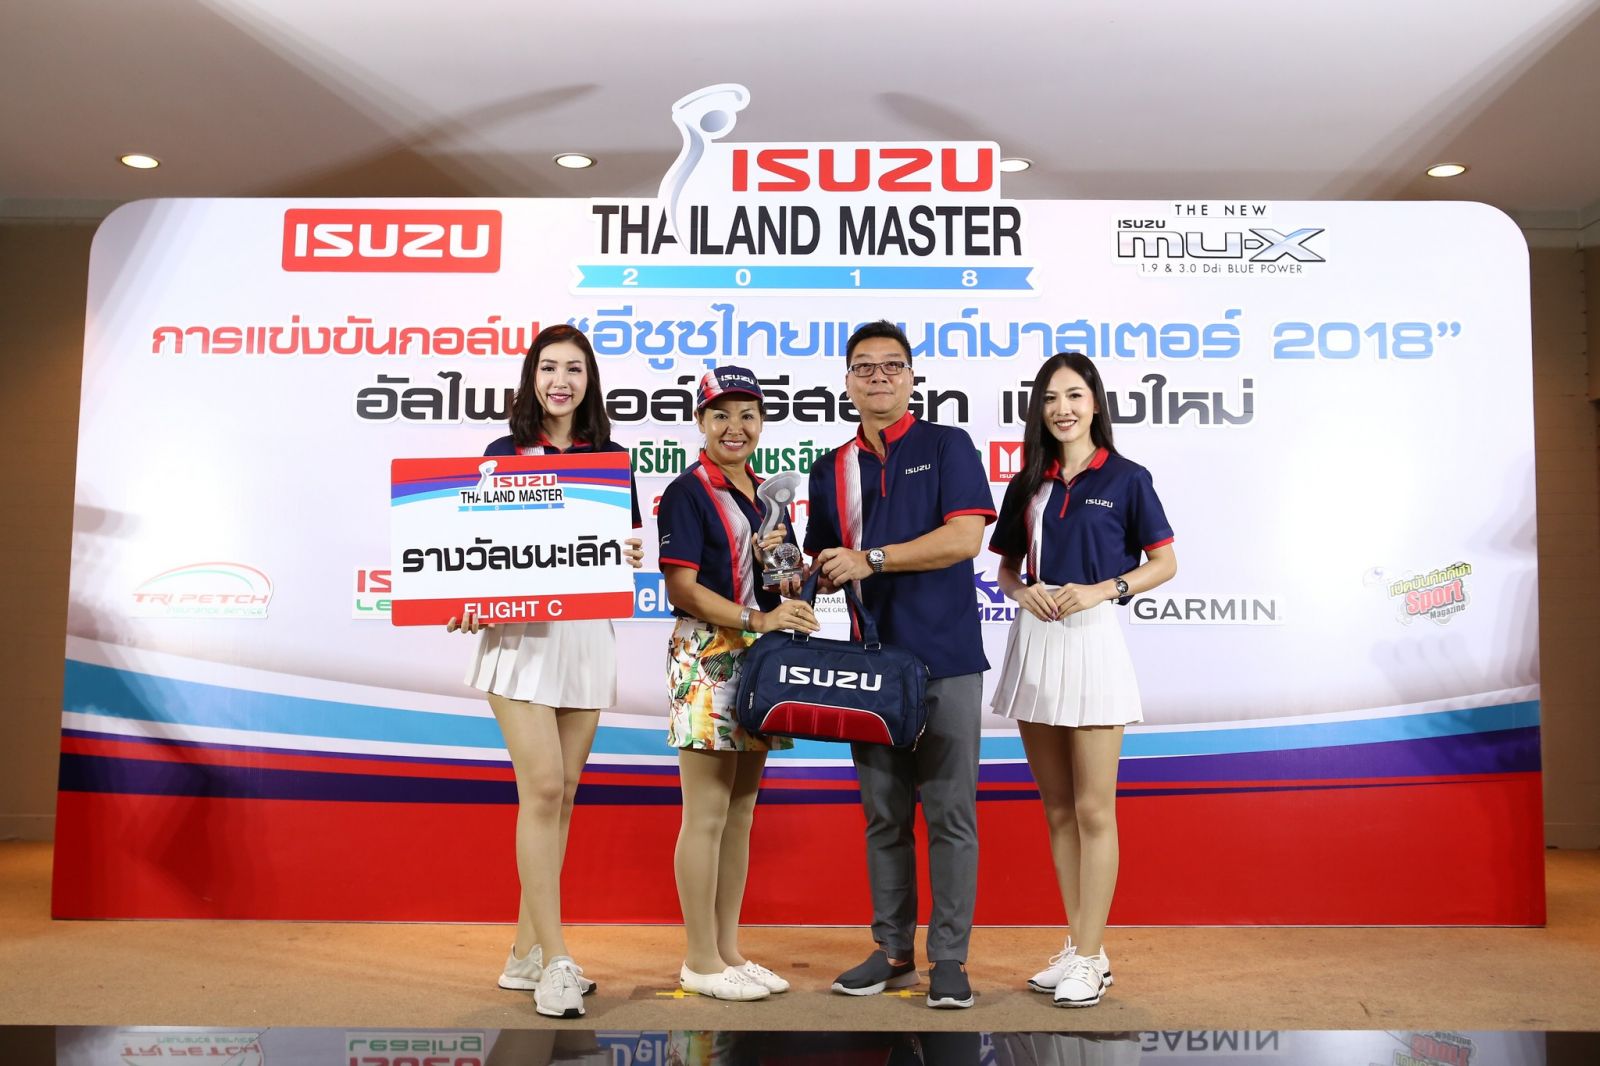 ISUZU Thailand Master